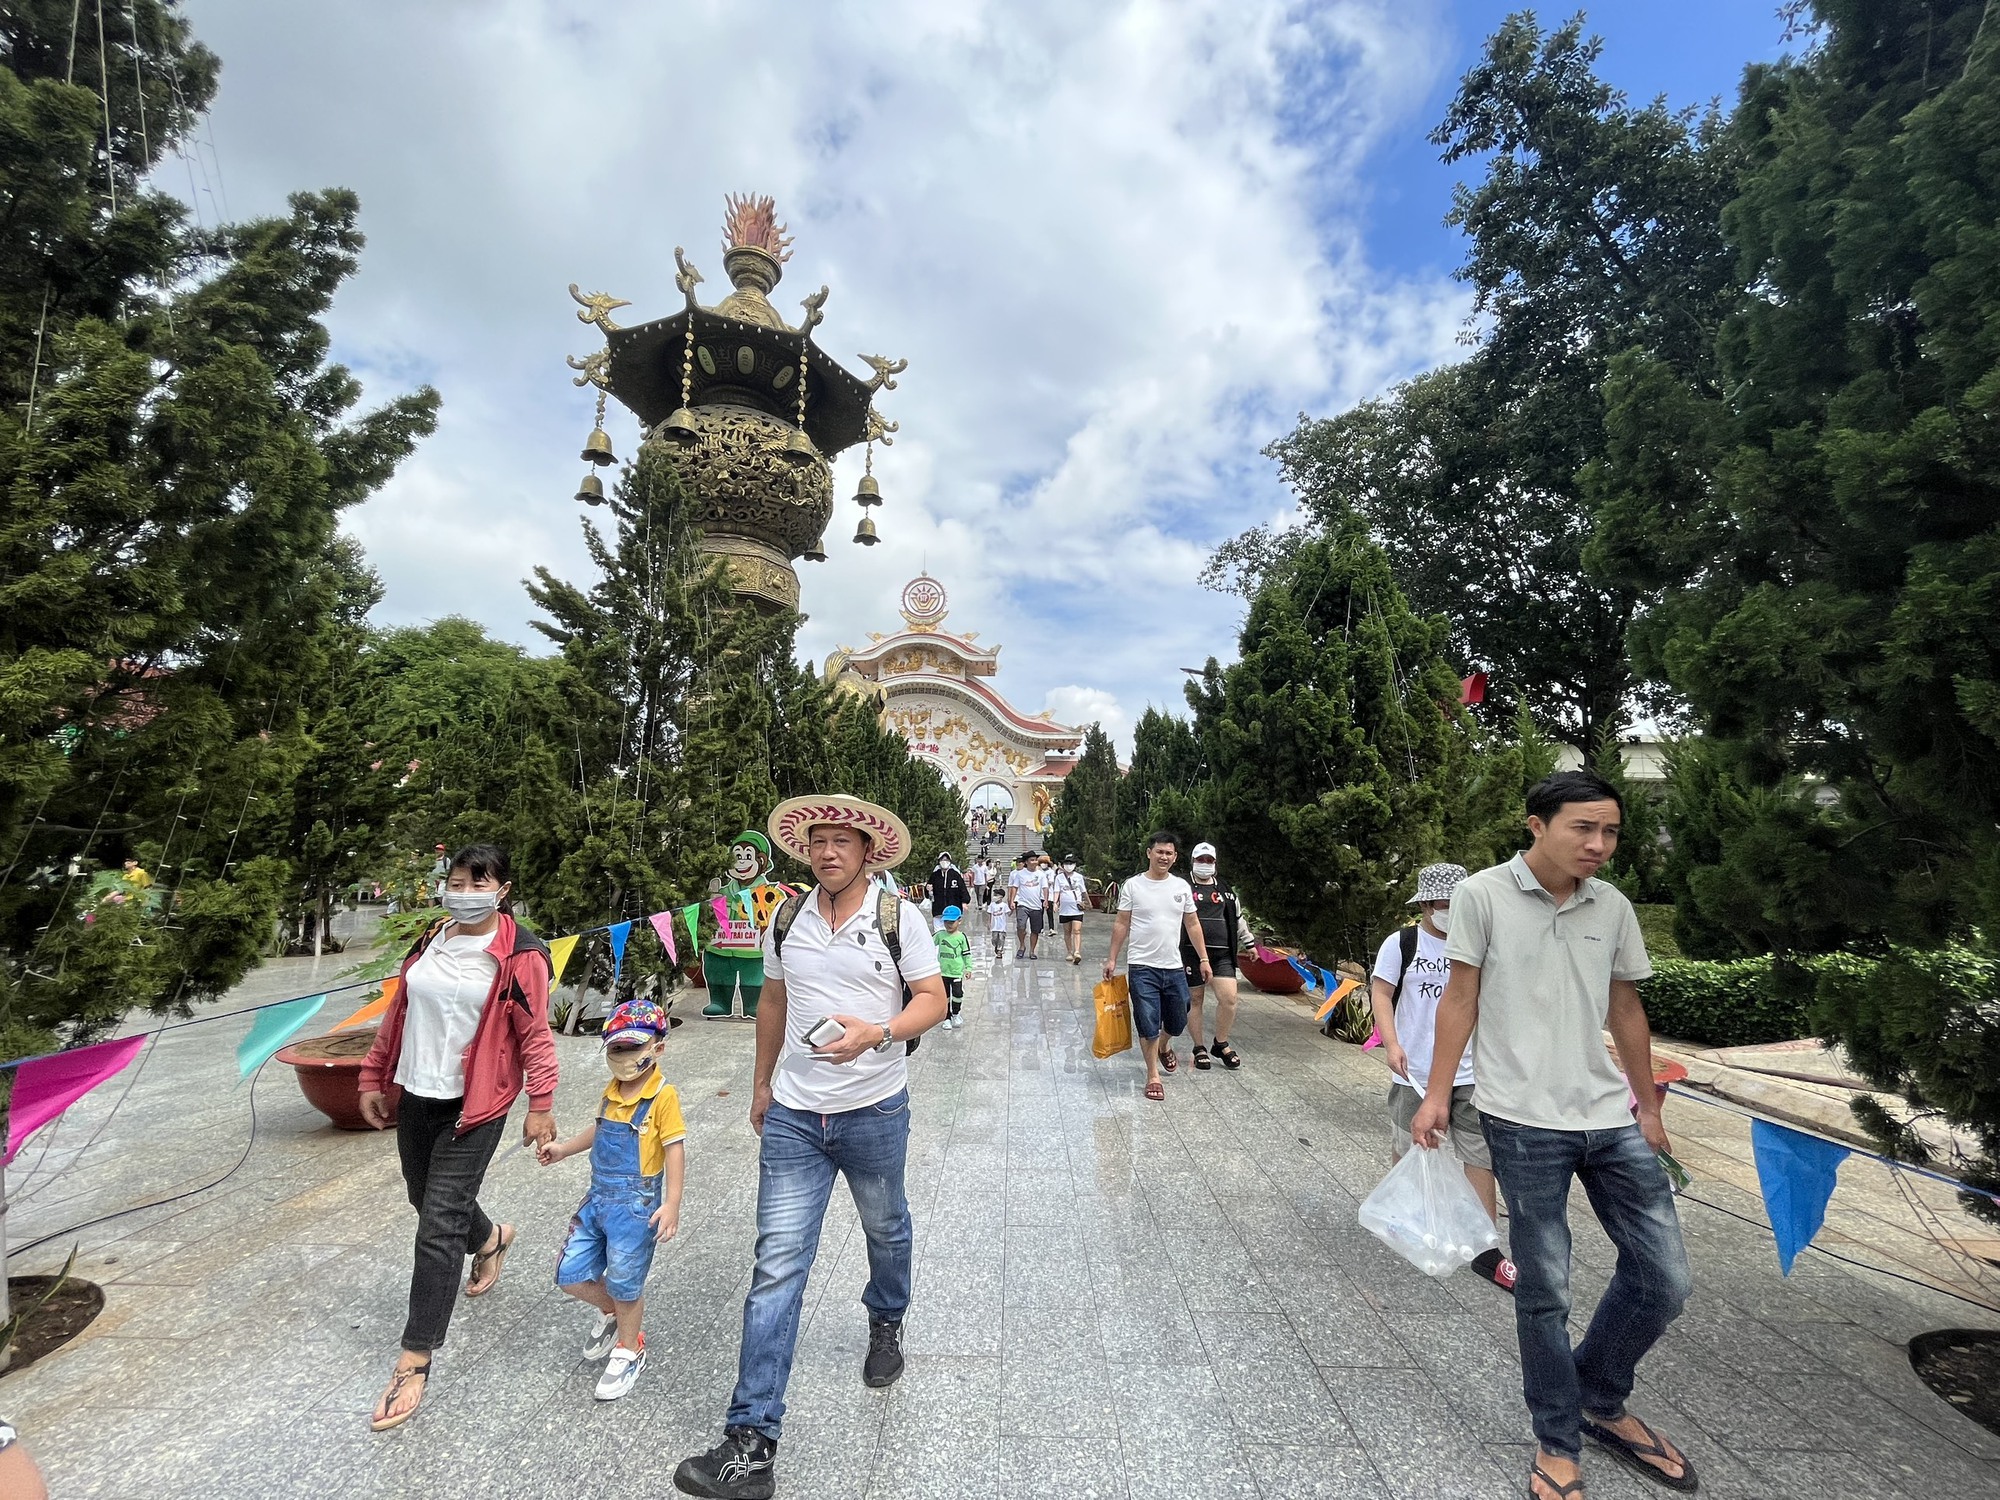 Bất ngờ nhiều quần thể sướng đùa “quốc dân” bên trên Thành Phố Sài Gòn free vé cổng lễ 2/9 - Hình ảnh 1.